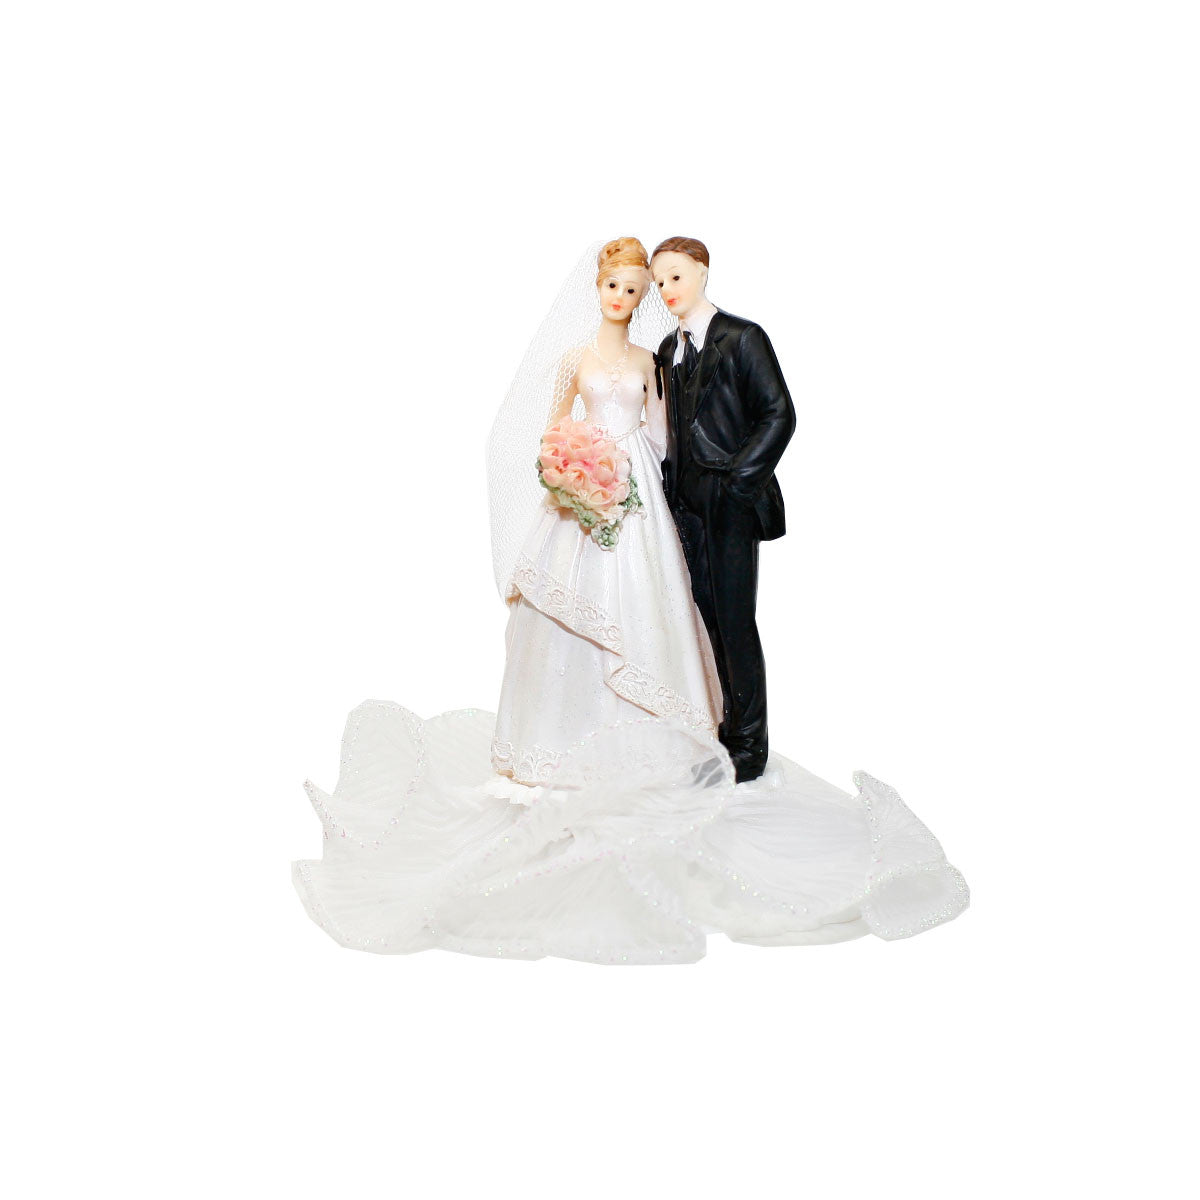 Wedding couple figurines